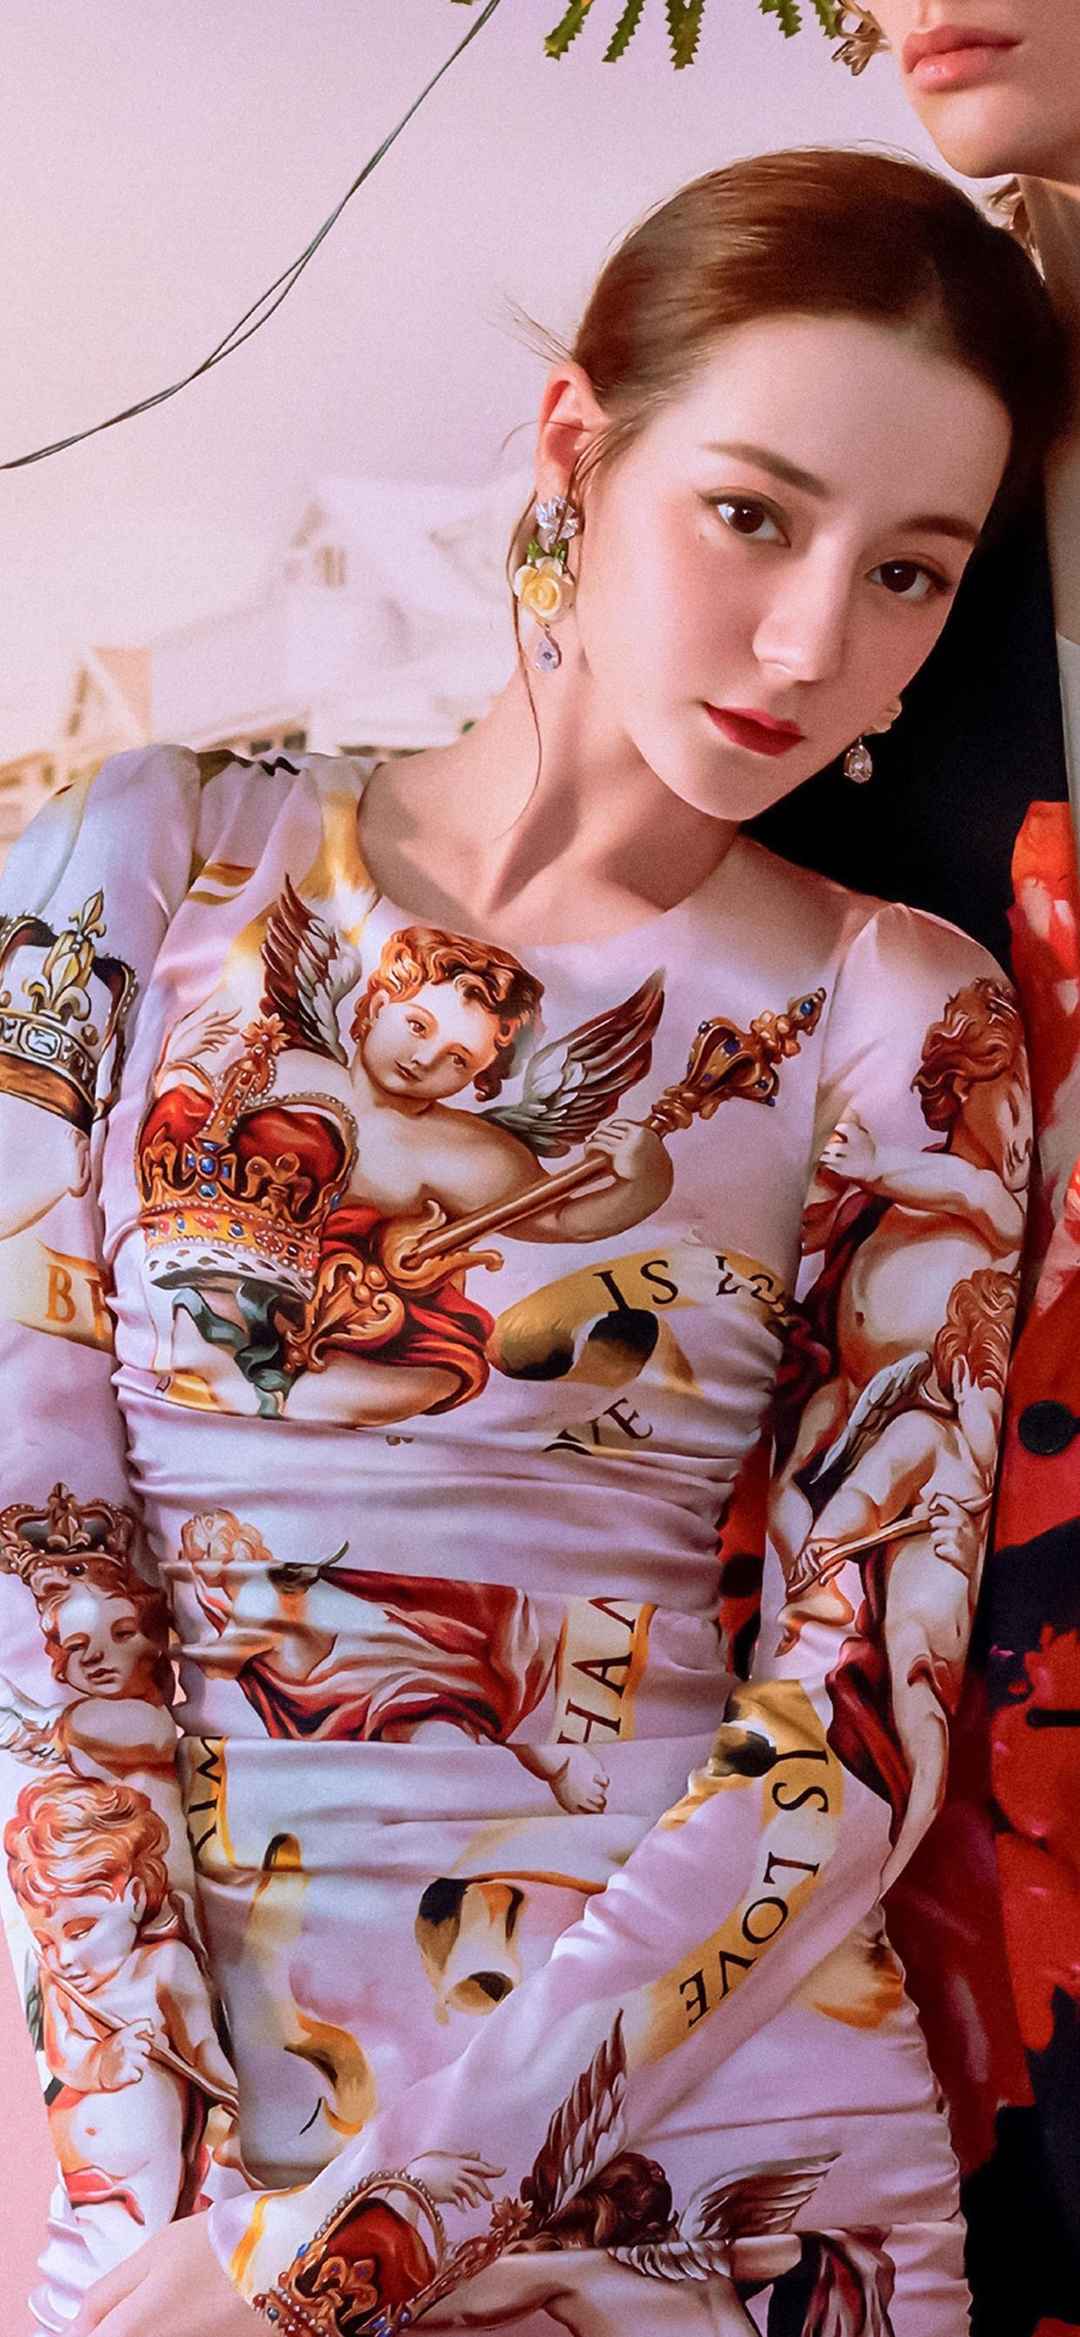 中国最美的女明星第一名迪丽热巴时尚气质写真手机壁纸-